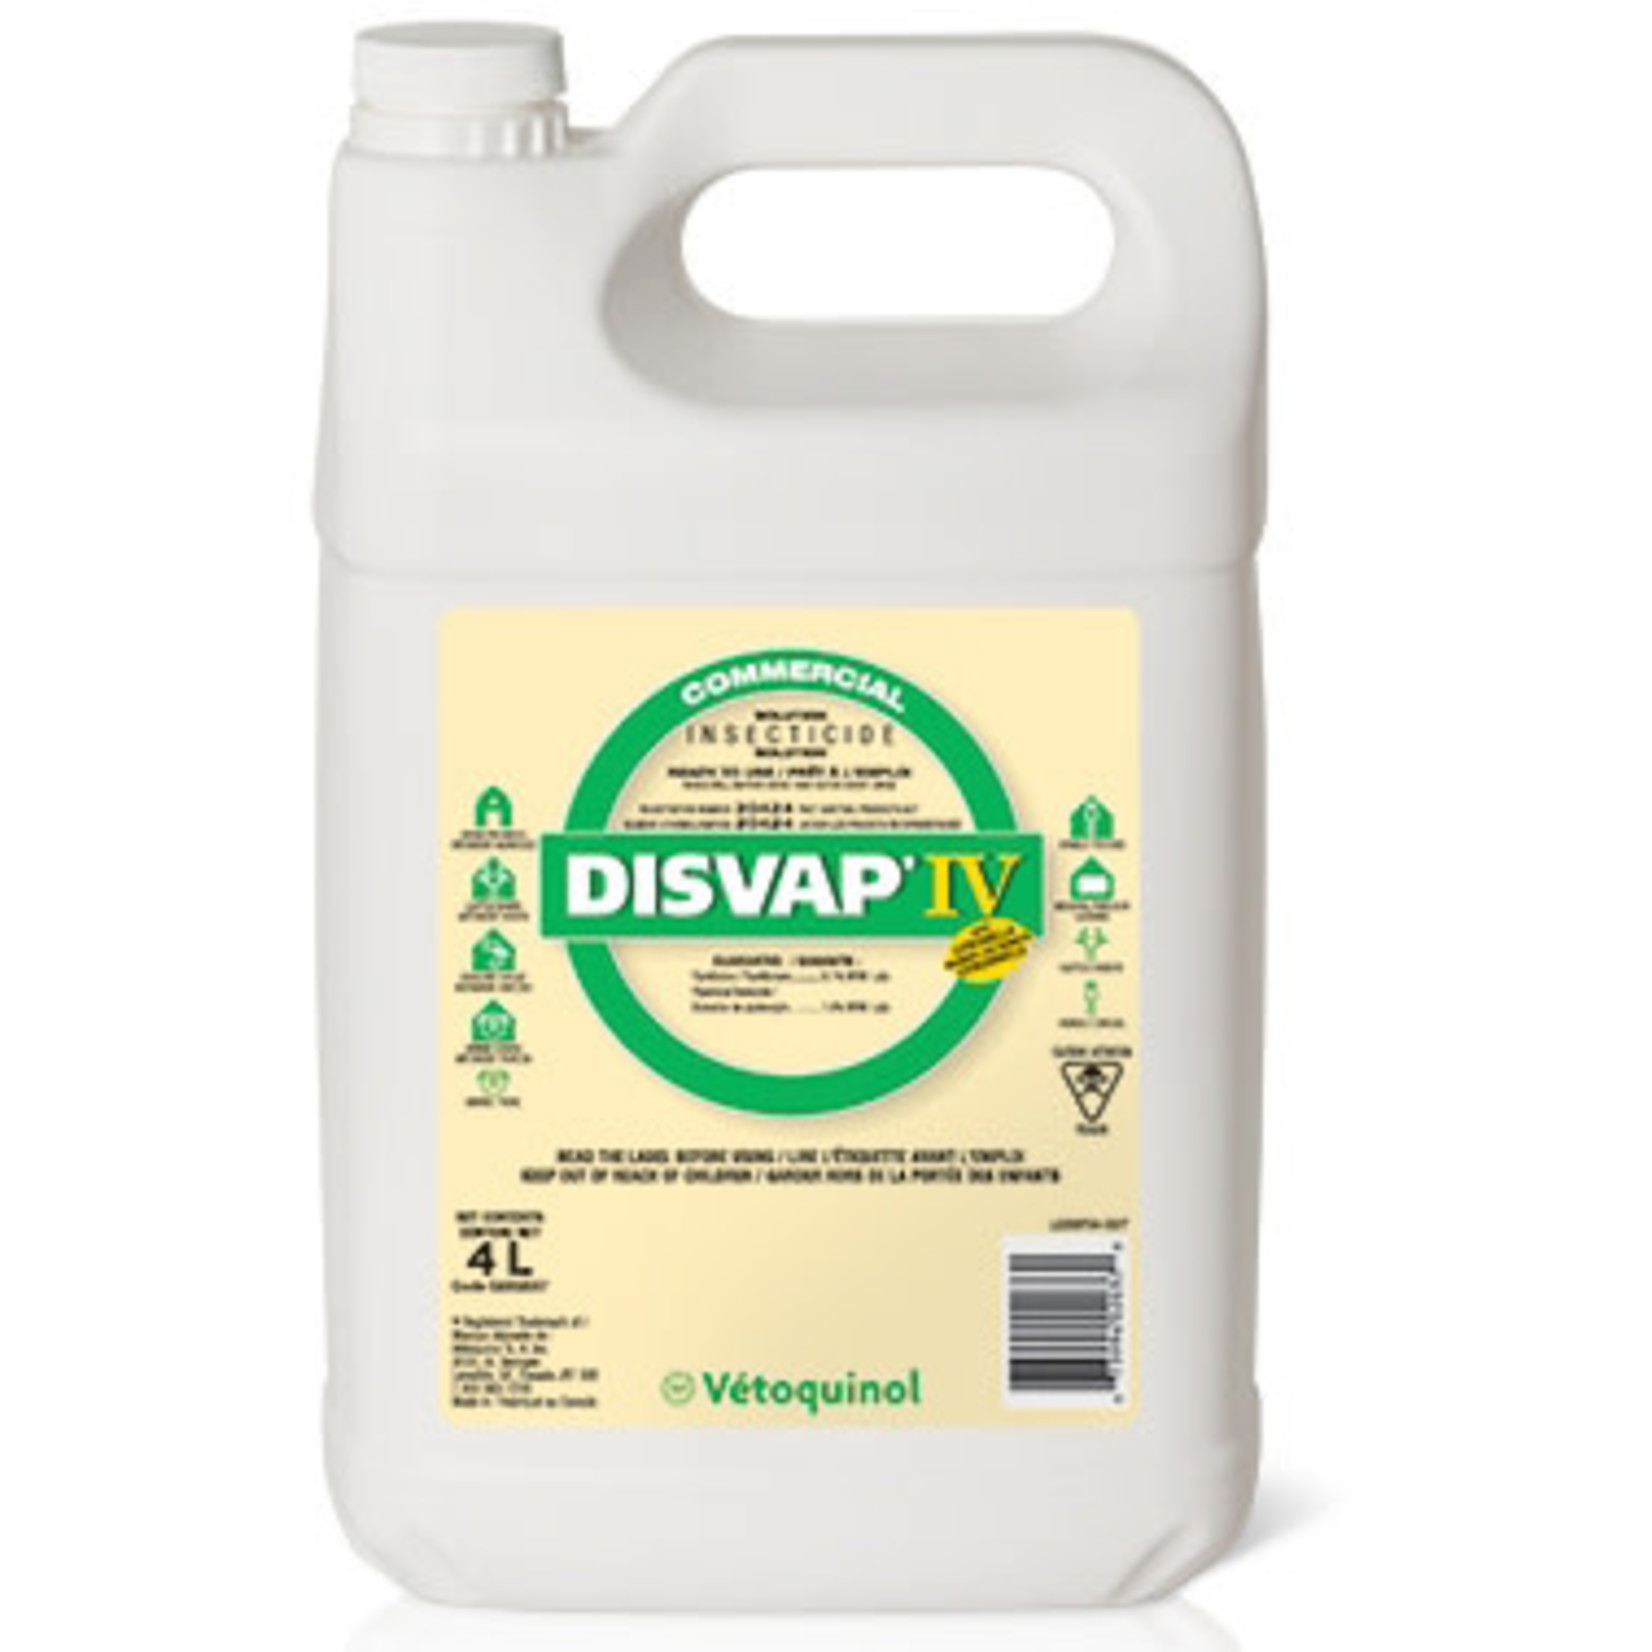 Disvap IV 4L